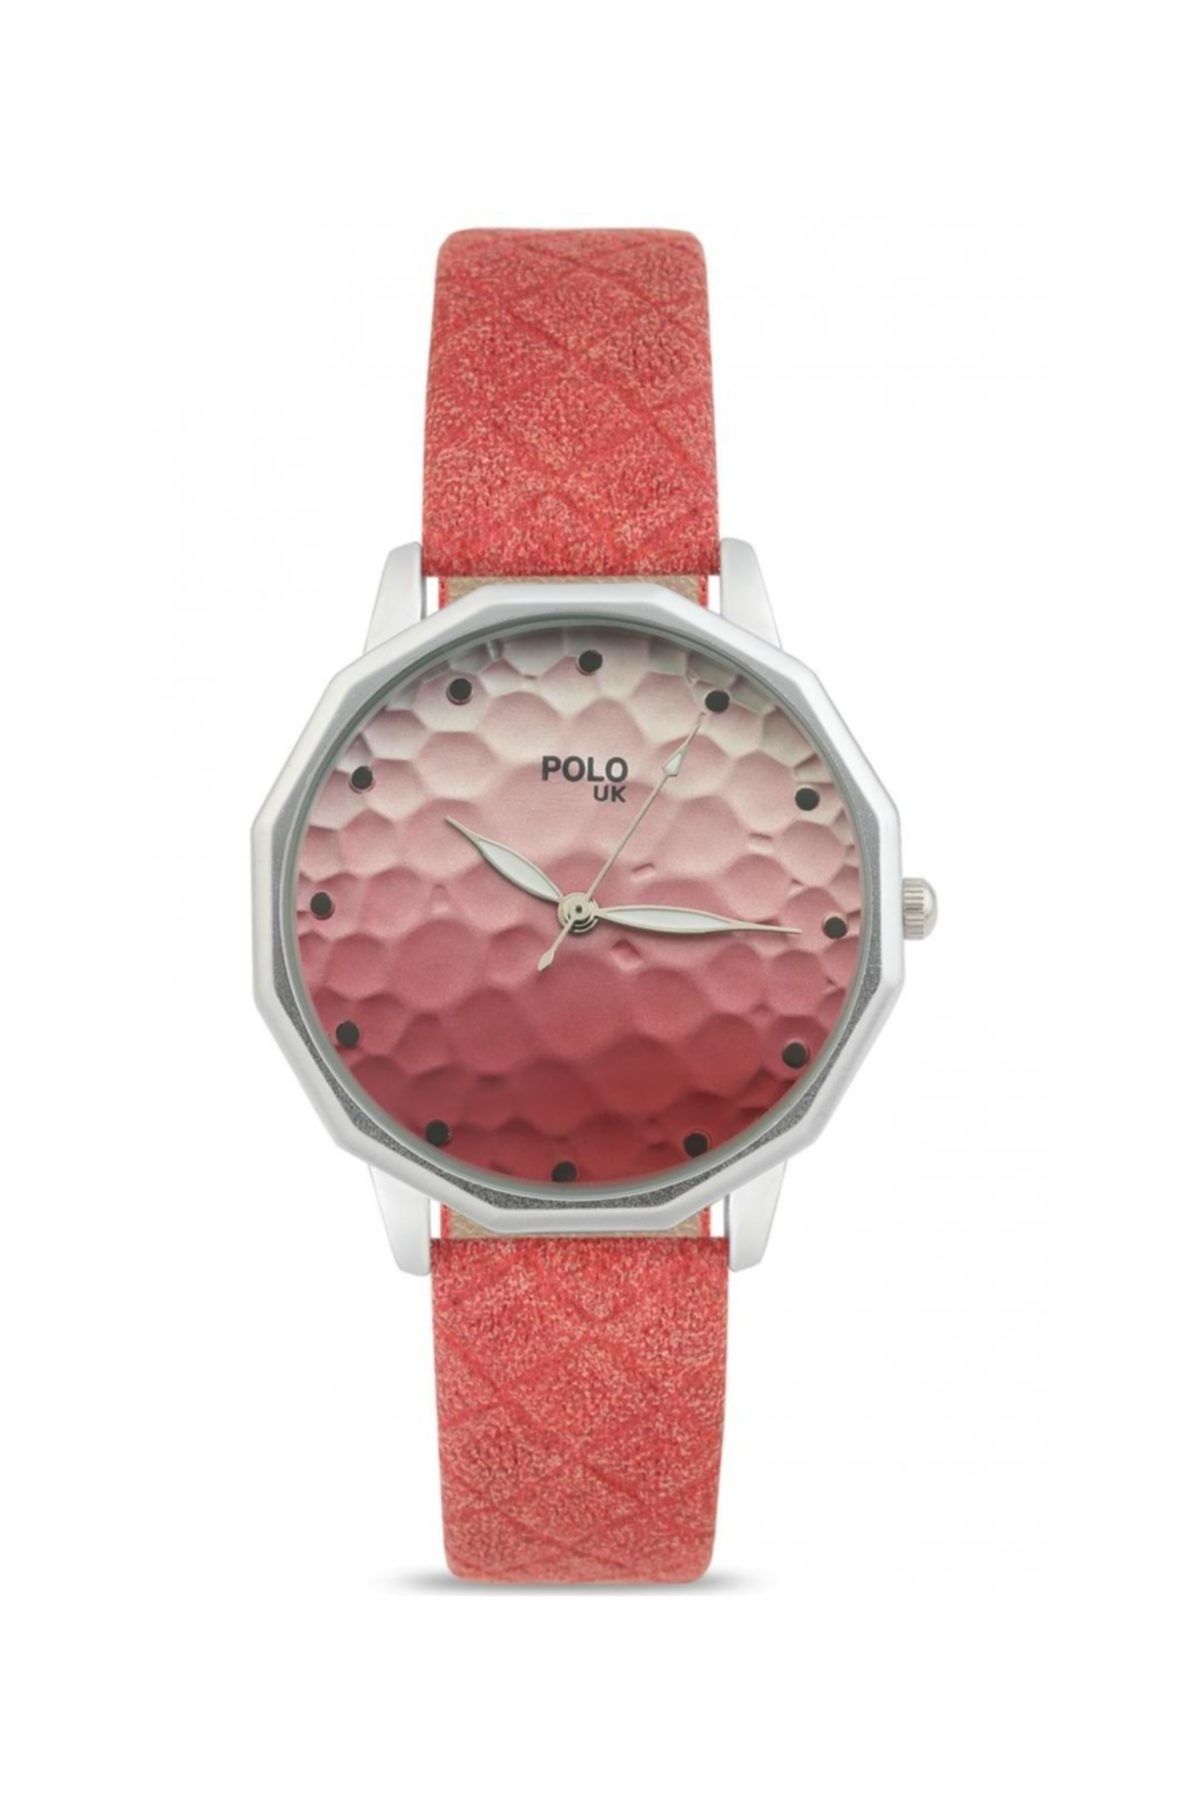 Polo U.K. Kadın Kol Saati POLOUK 501